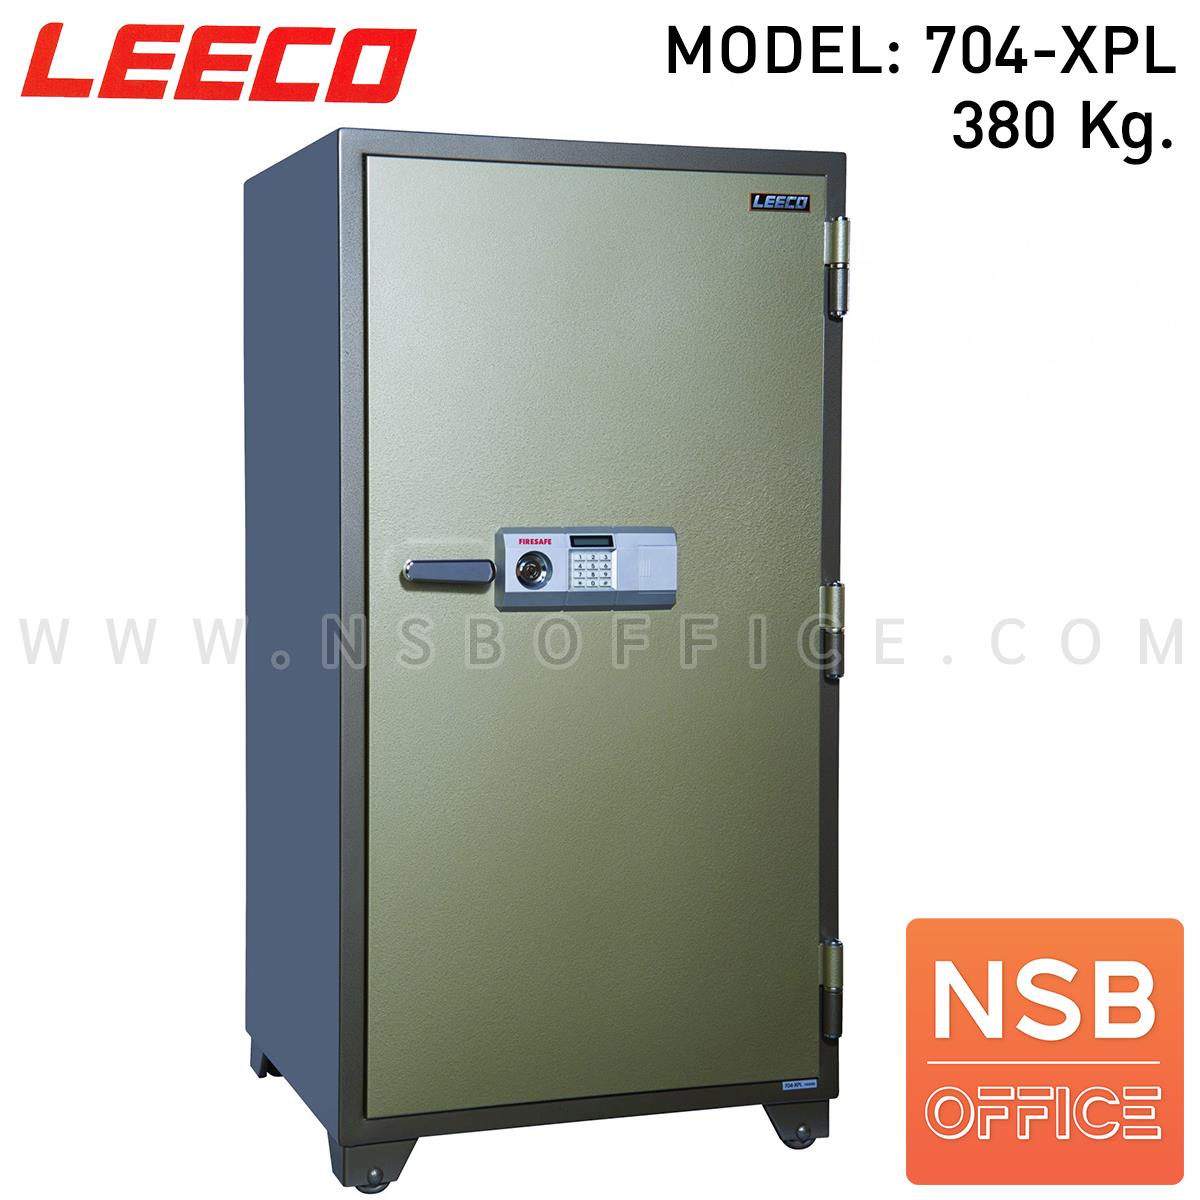 F02A058:ตู้เซฟนิรภัย 380 กก. ลิโก้ รุ่น Leeco-704-XPL (1 กุญแจ 1 รหัส)   